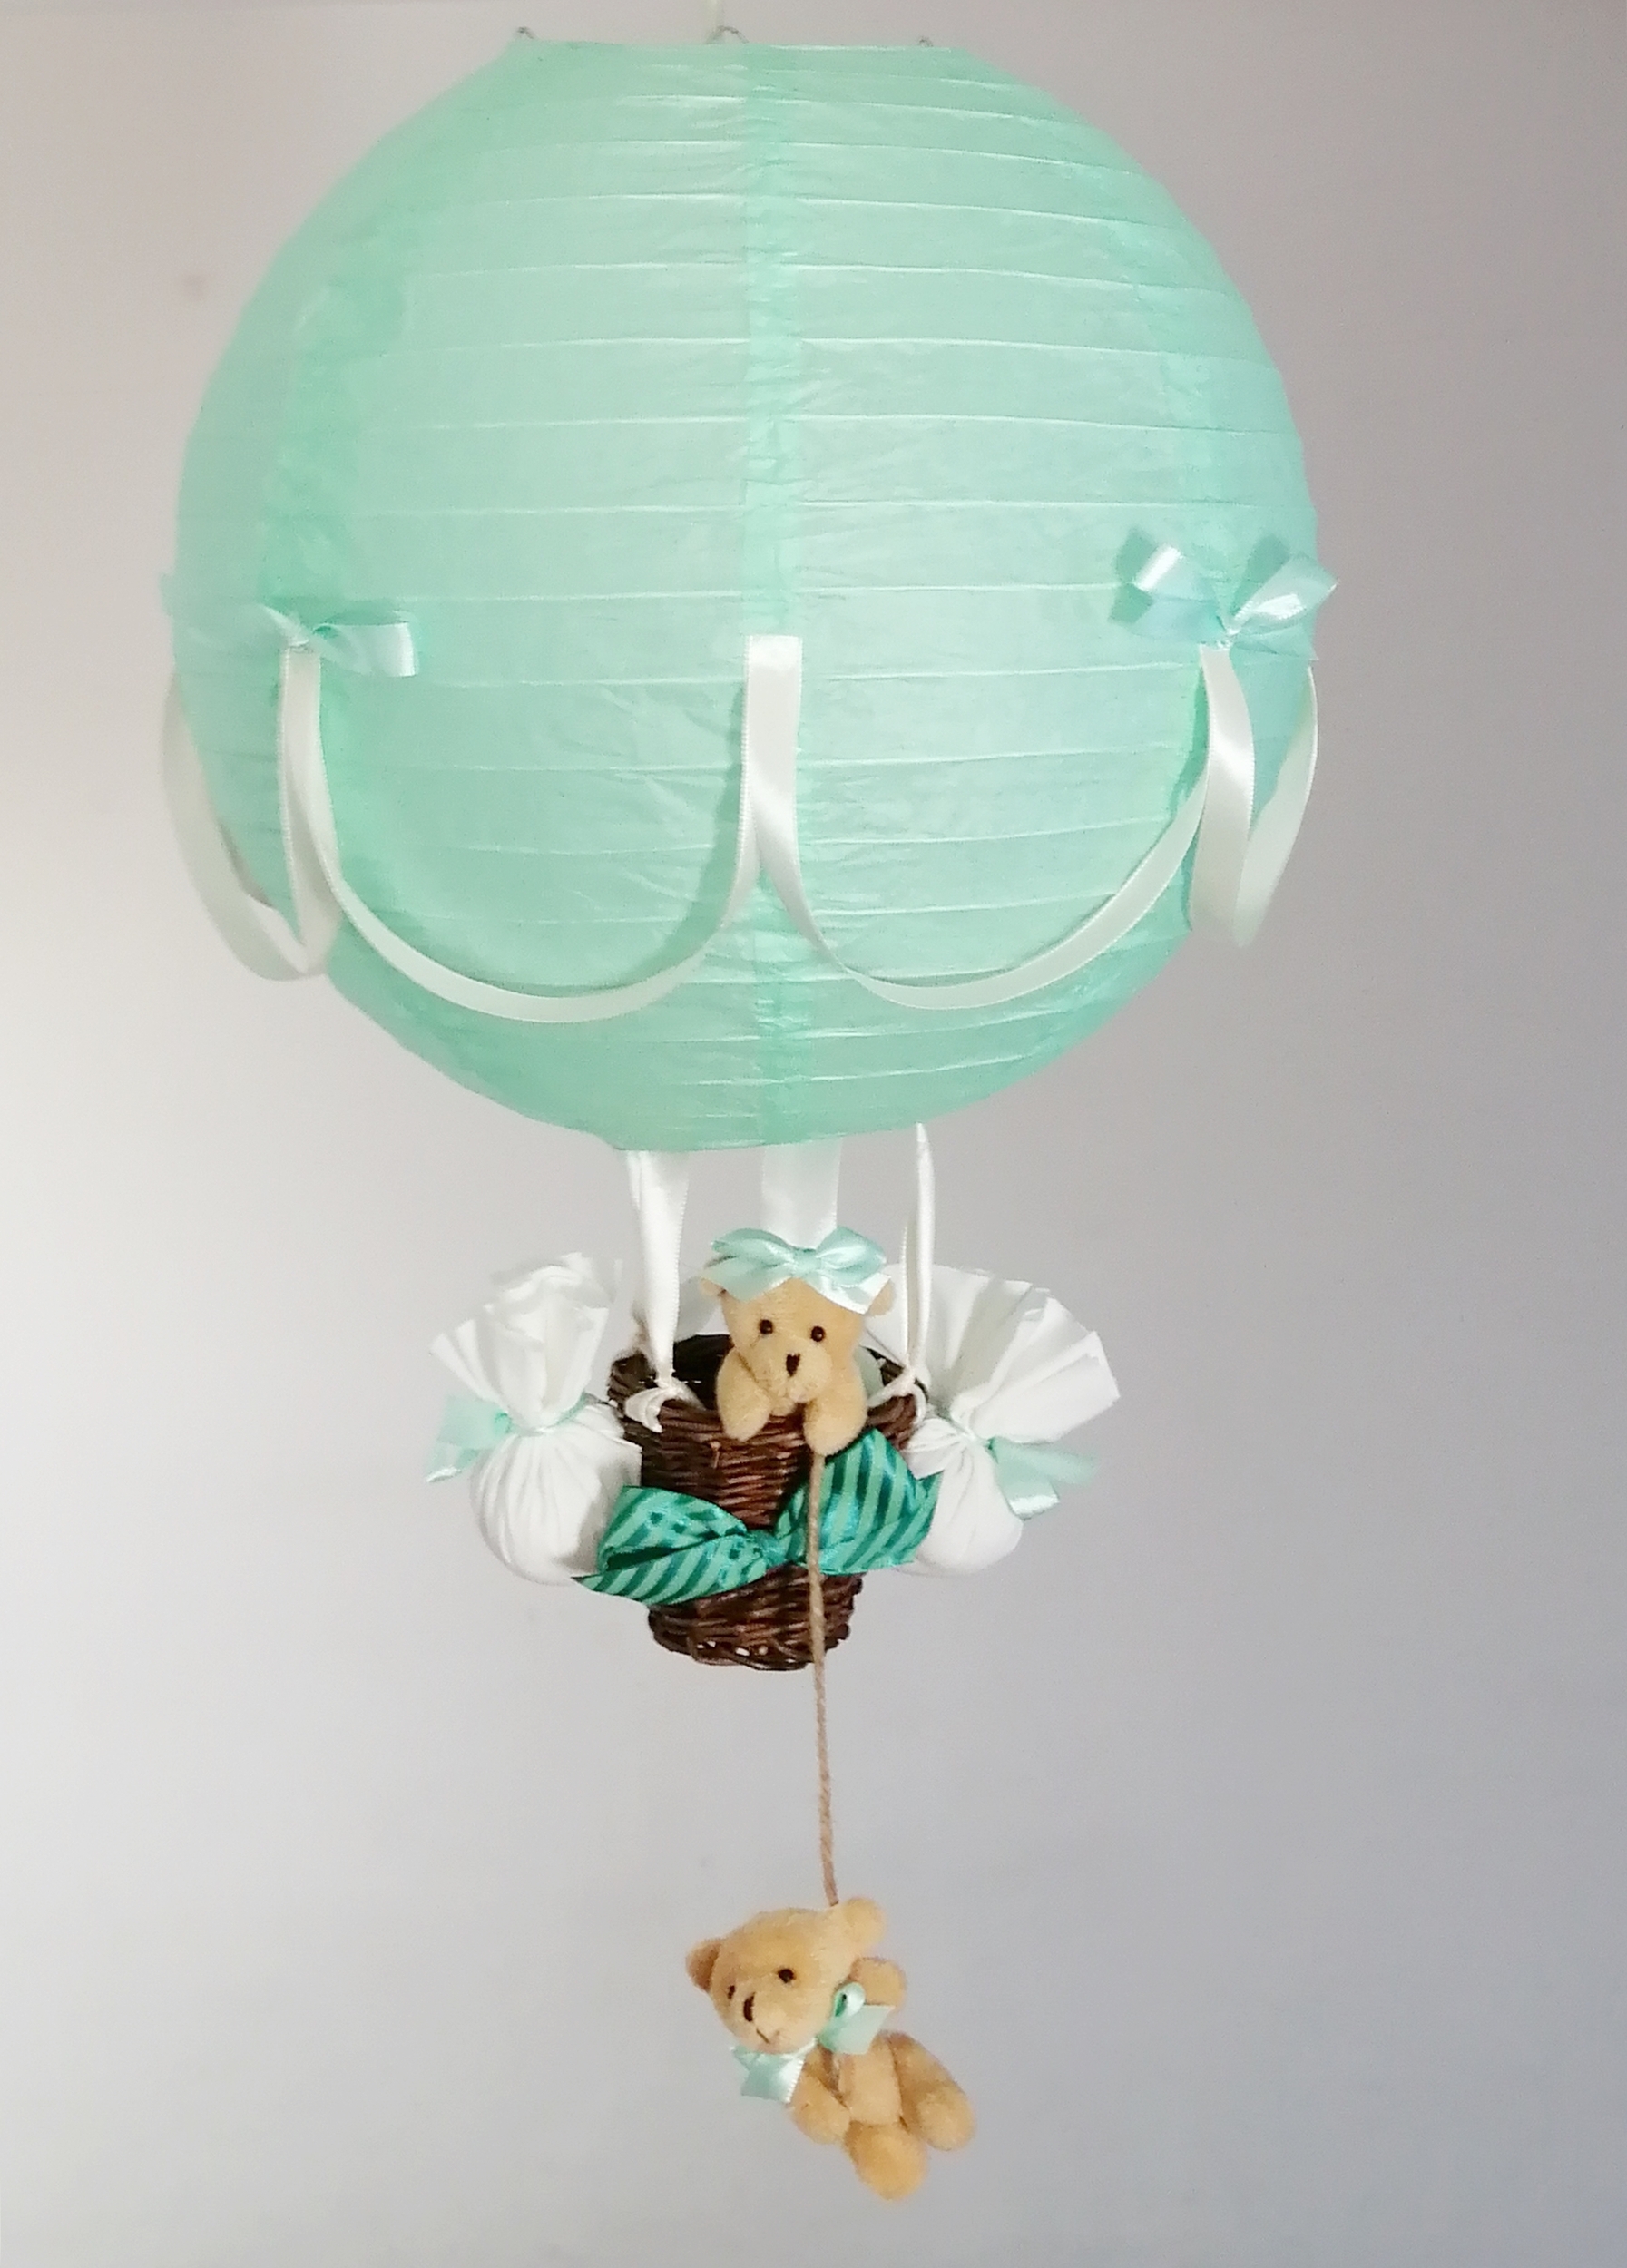 Lampe-montgolfiere-enfant-bebe-beige-vert-menthe-création artisanale-ours-decoration-chambre